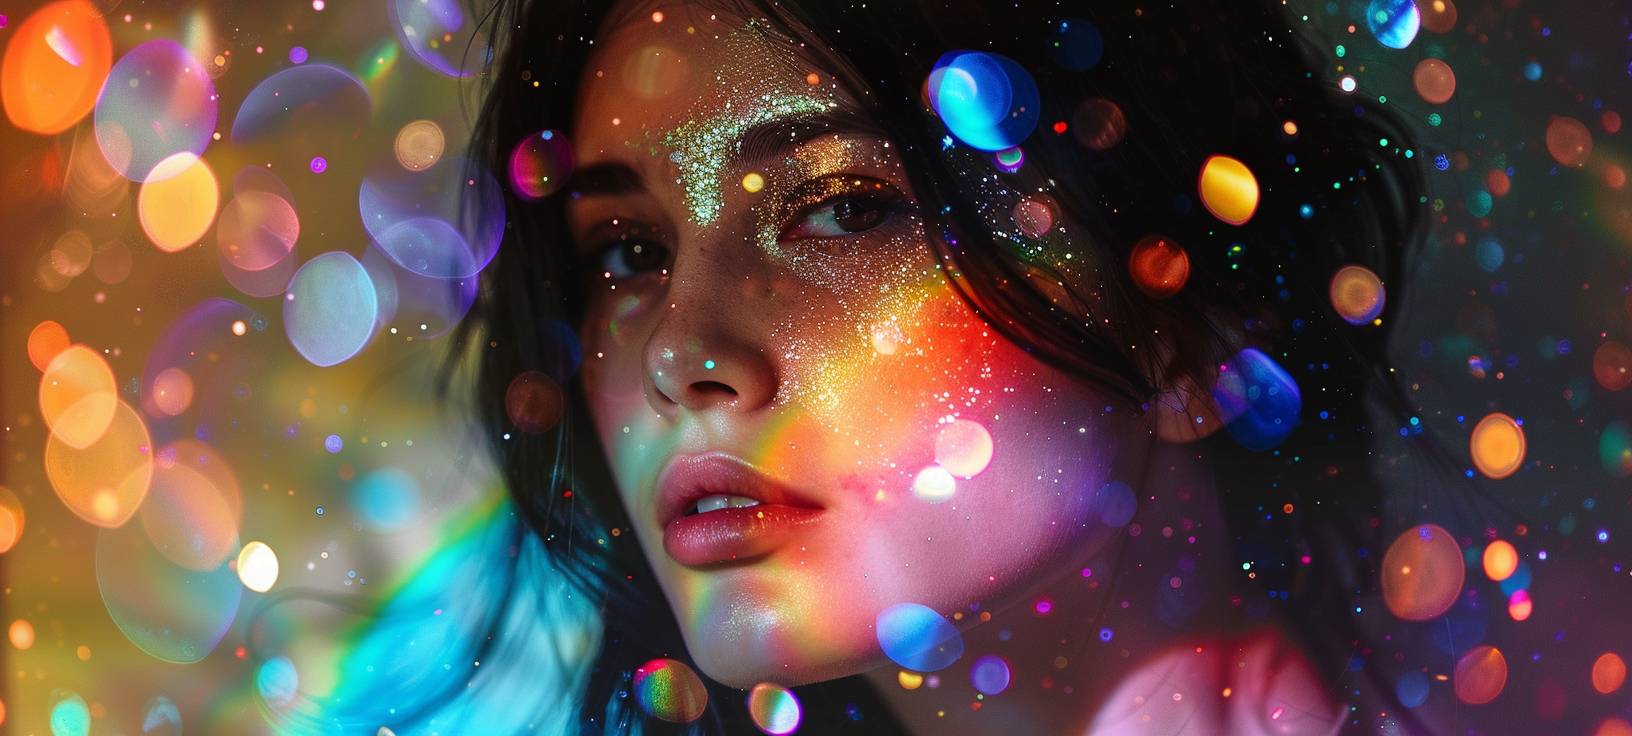 暗髪で輝く光で照らされた若い女性の肖像、輝く虹色コアの背景に設定され、迷幻的でシネマティックな美を創造するために、ダブルエクスポージャー写真で撮影されました